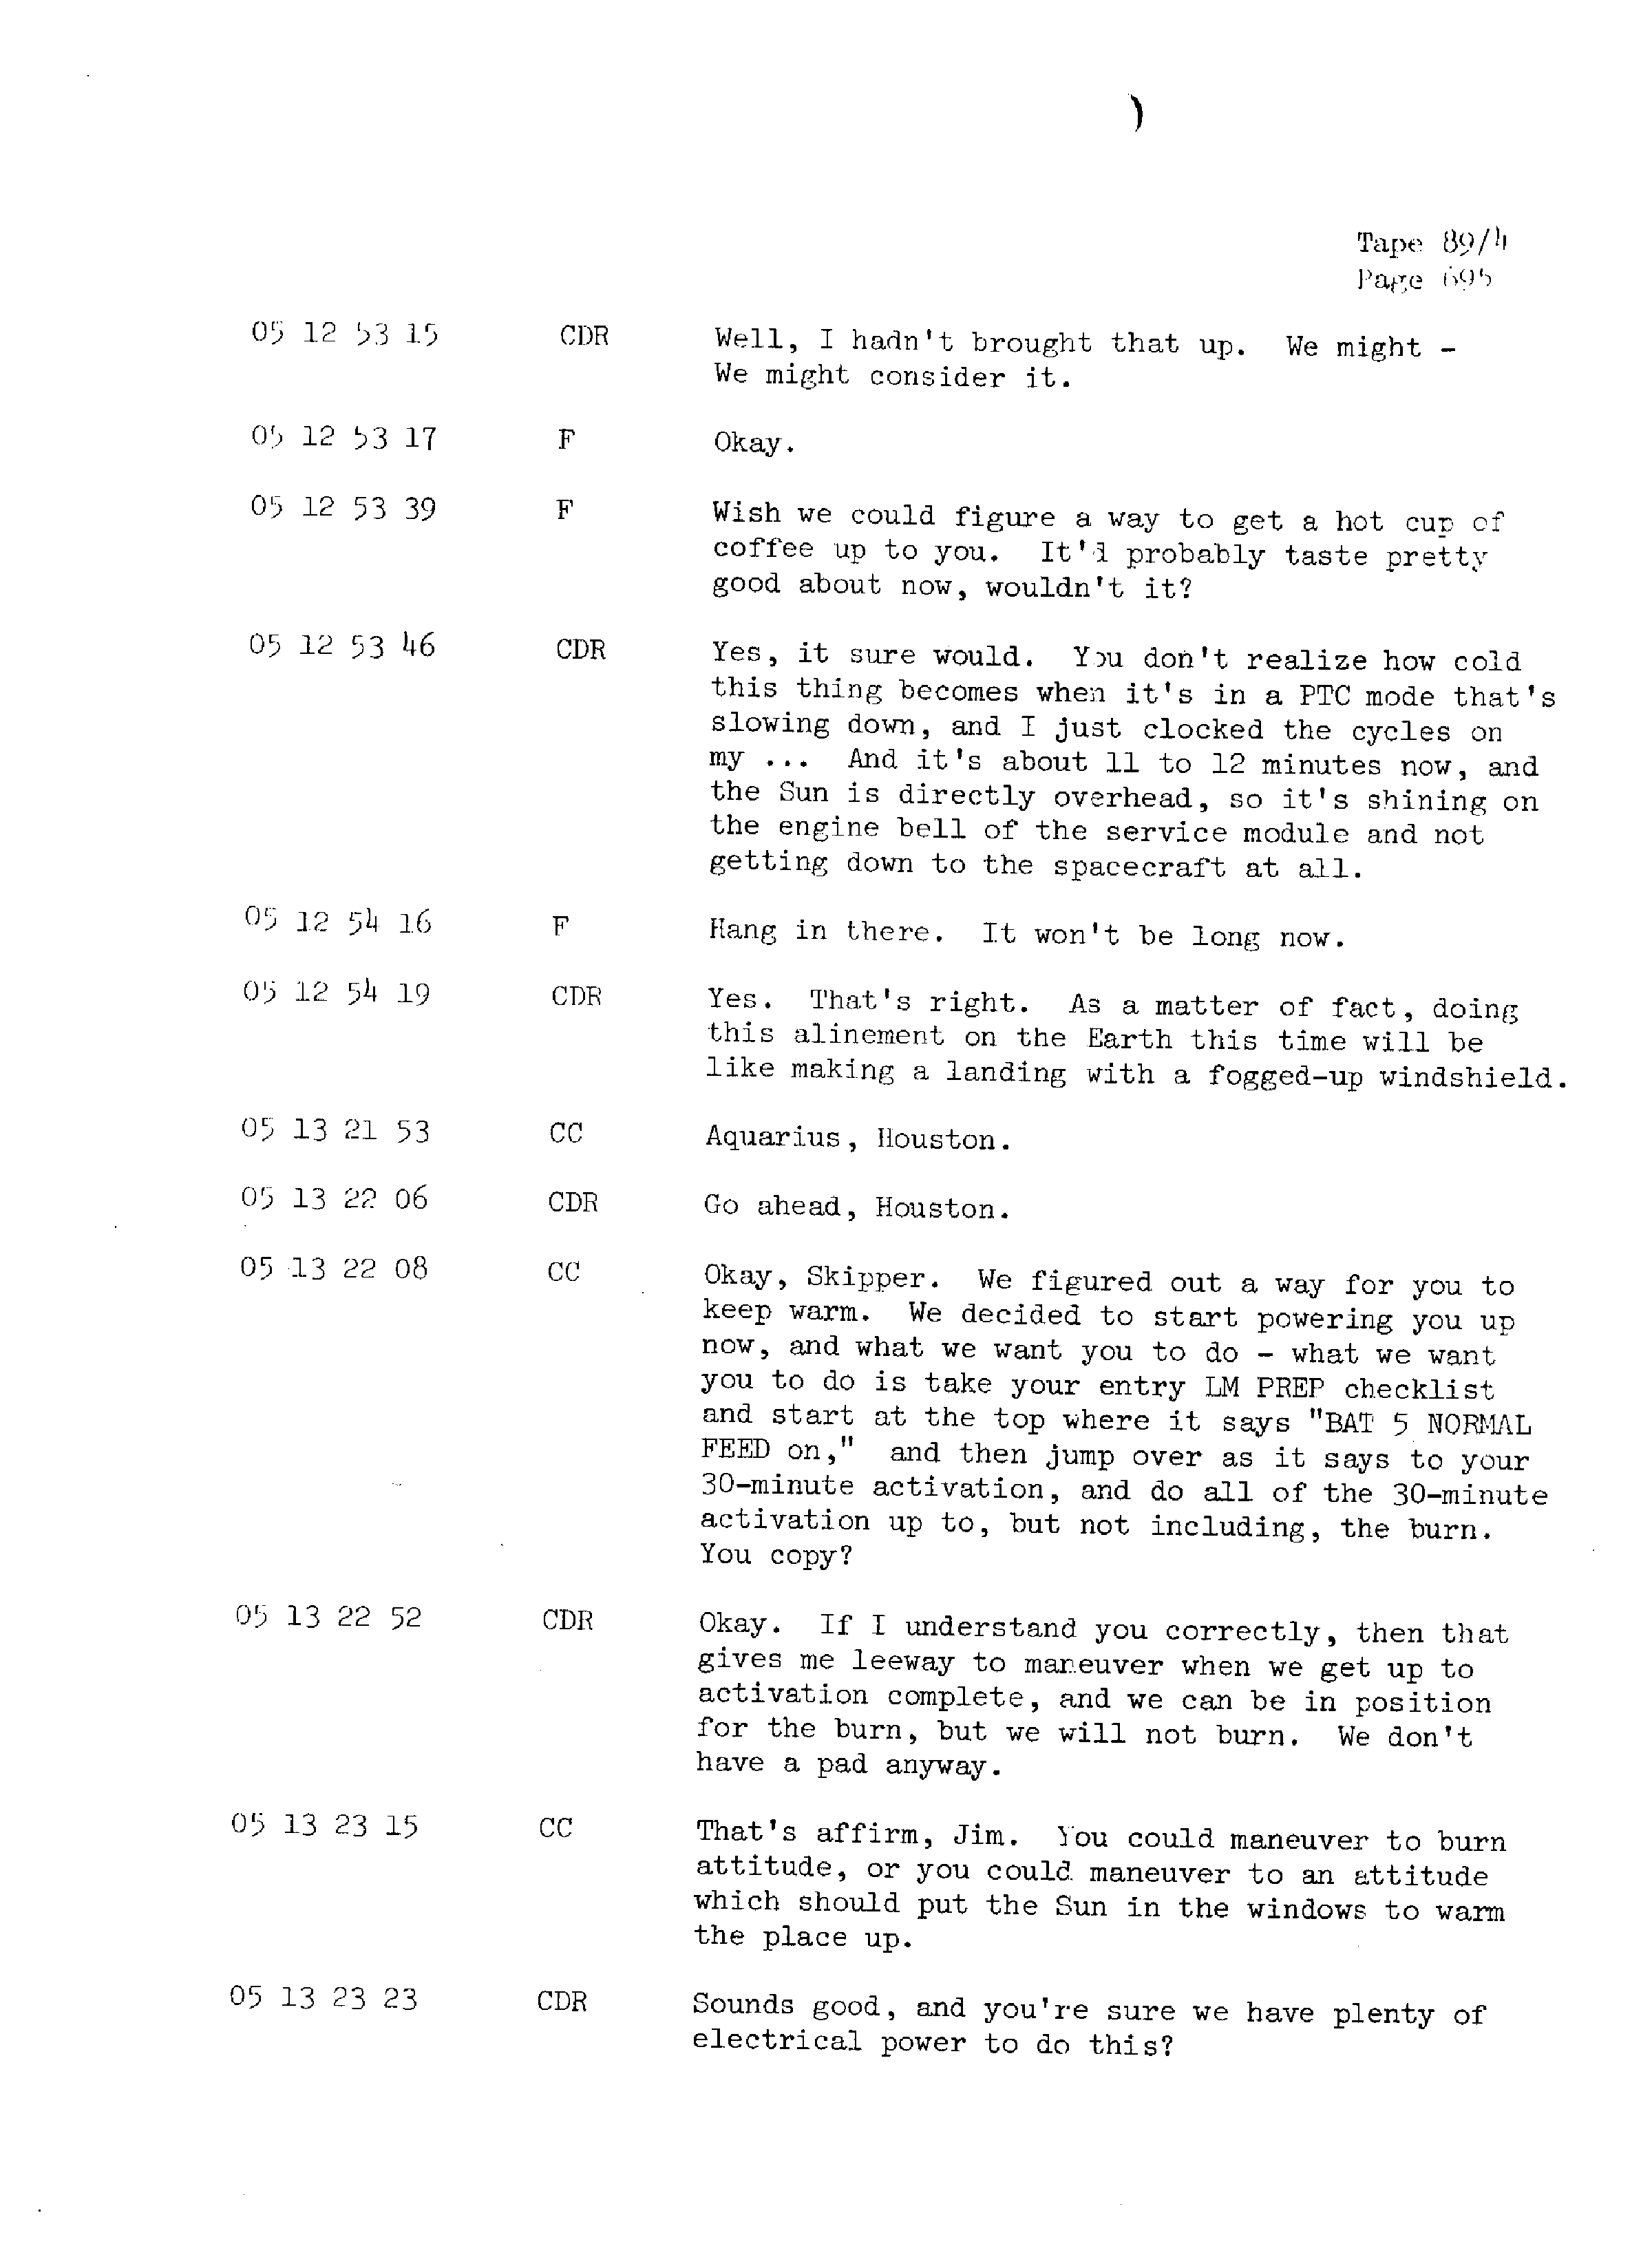 Page 702 of Apollo 13’s original transcript